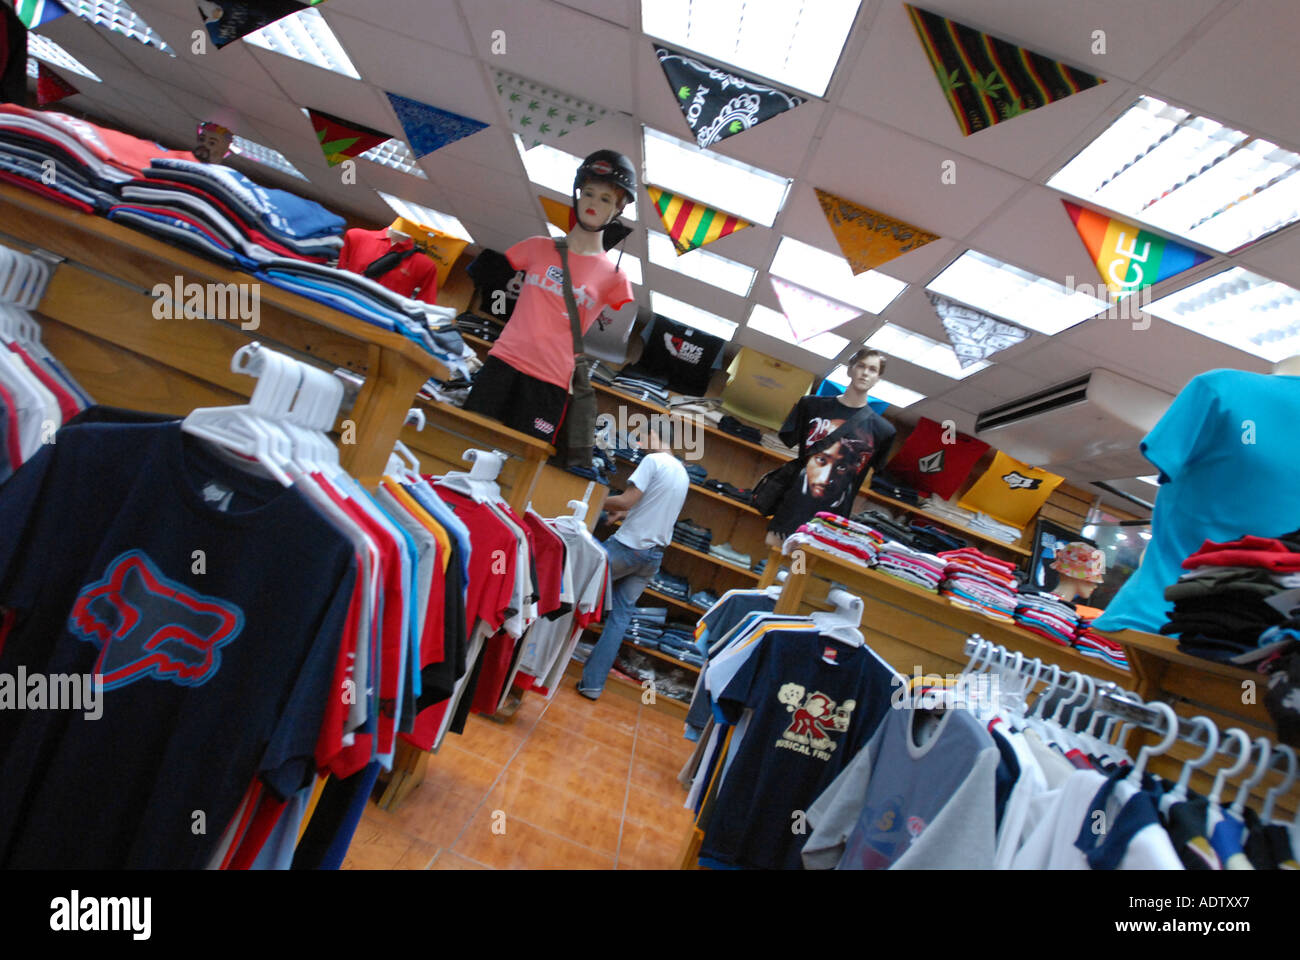 La tienda de ropa Al Karama en EAU, la falsificación de mercancías diseñador Mark marca snide réplica comerciante comercio ilegal barata de mercado de stock - Alamy